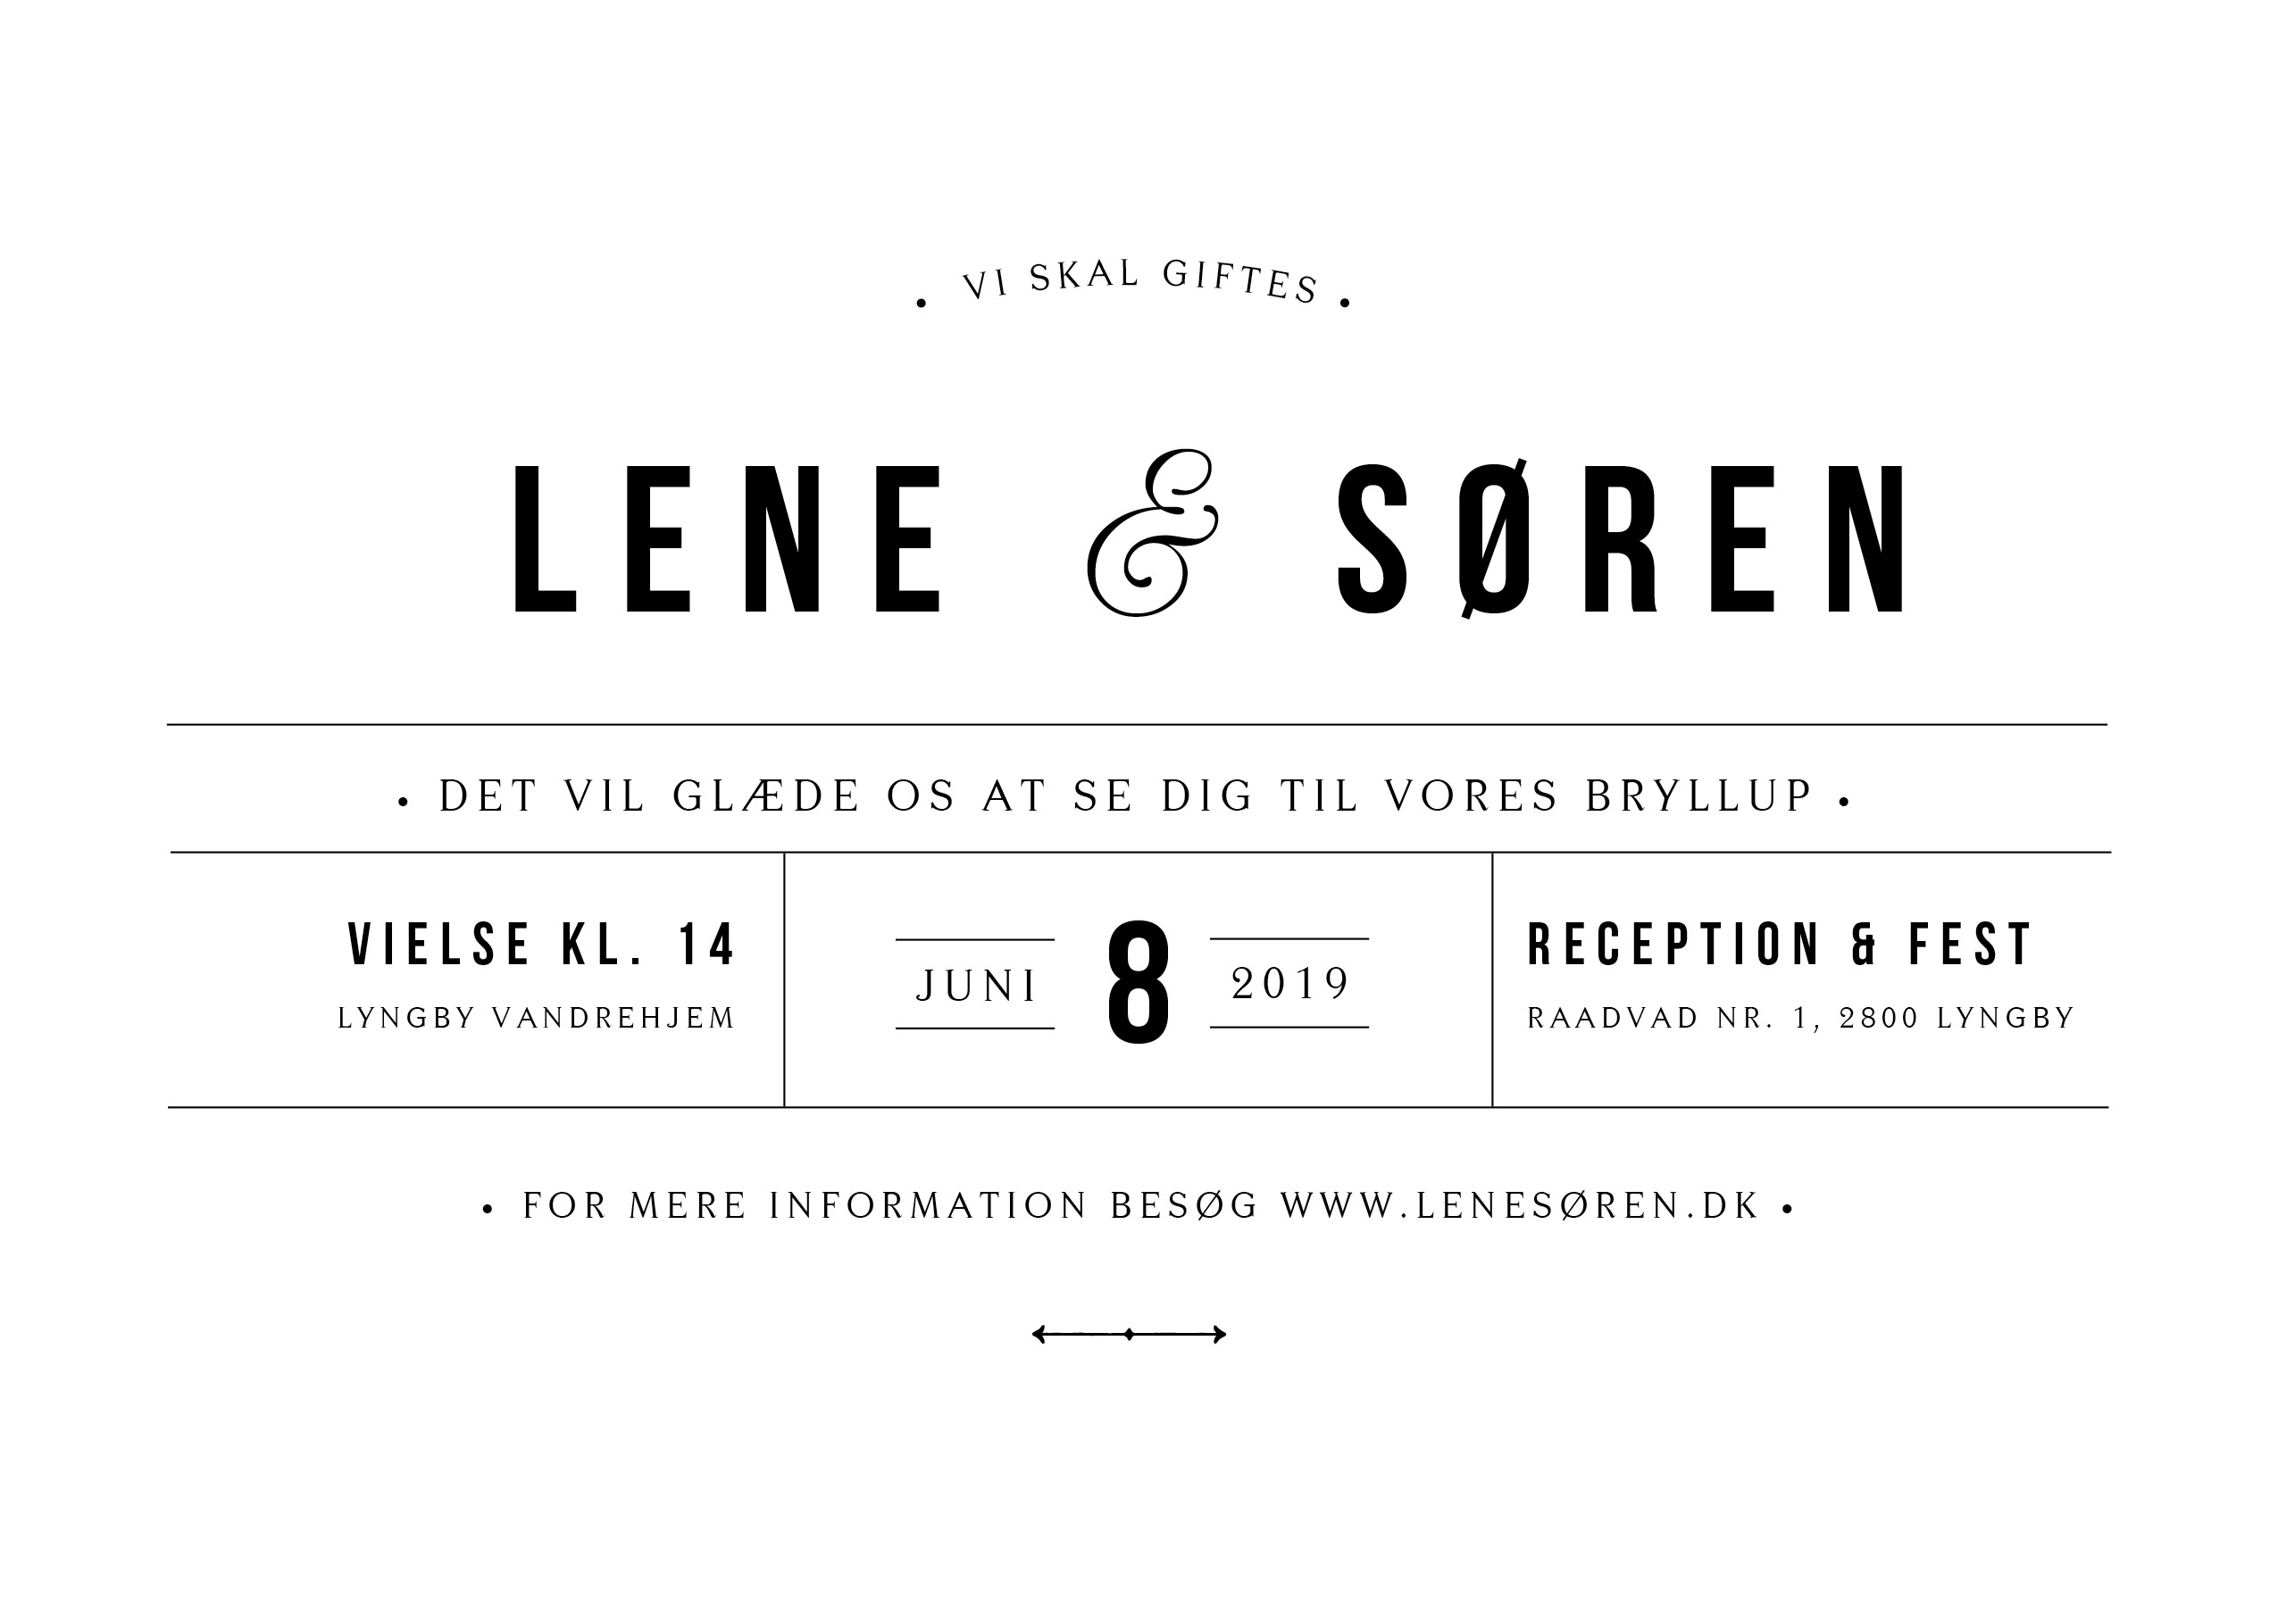 Invitationer - Lene & Søren